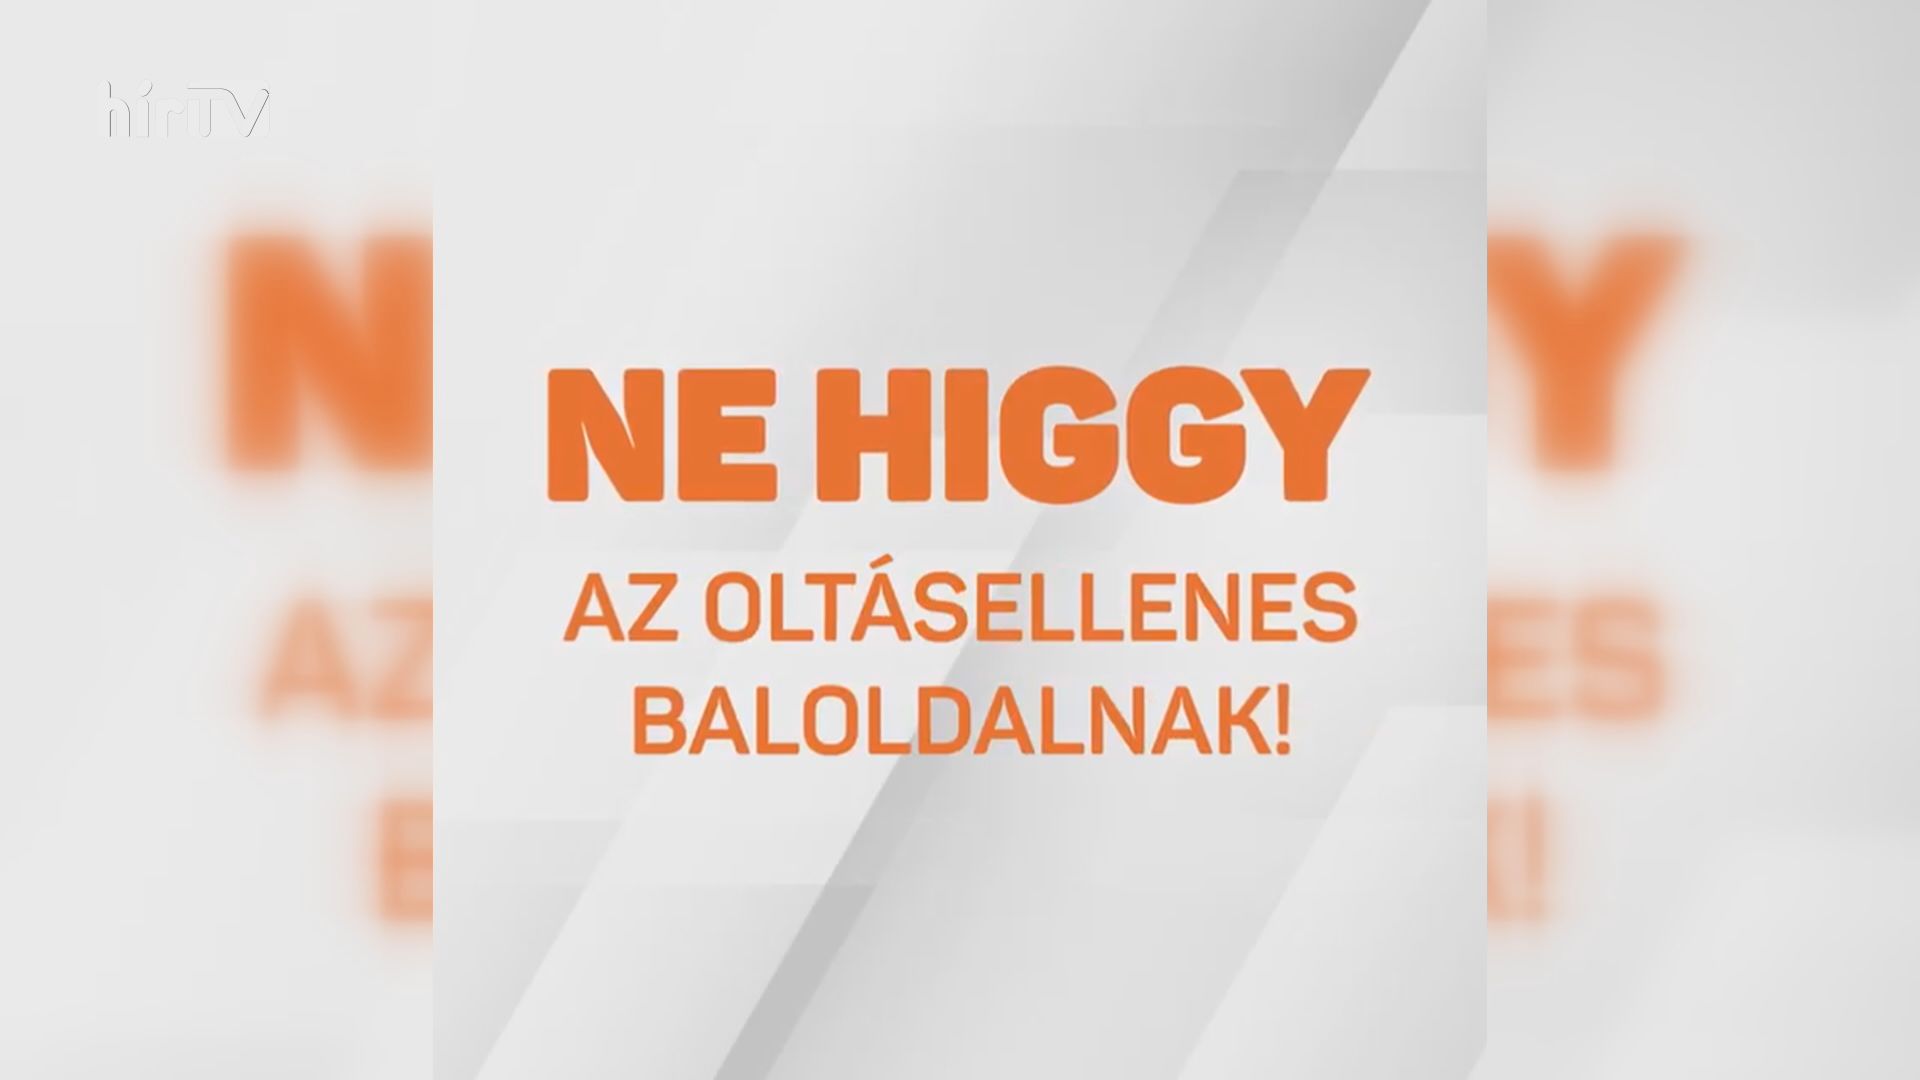 Fidesz: Nem szabad hinni az oltásellenes baloldalnak